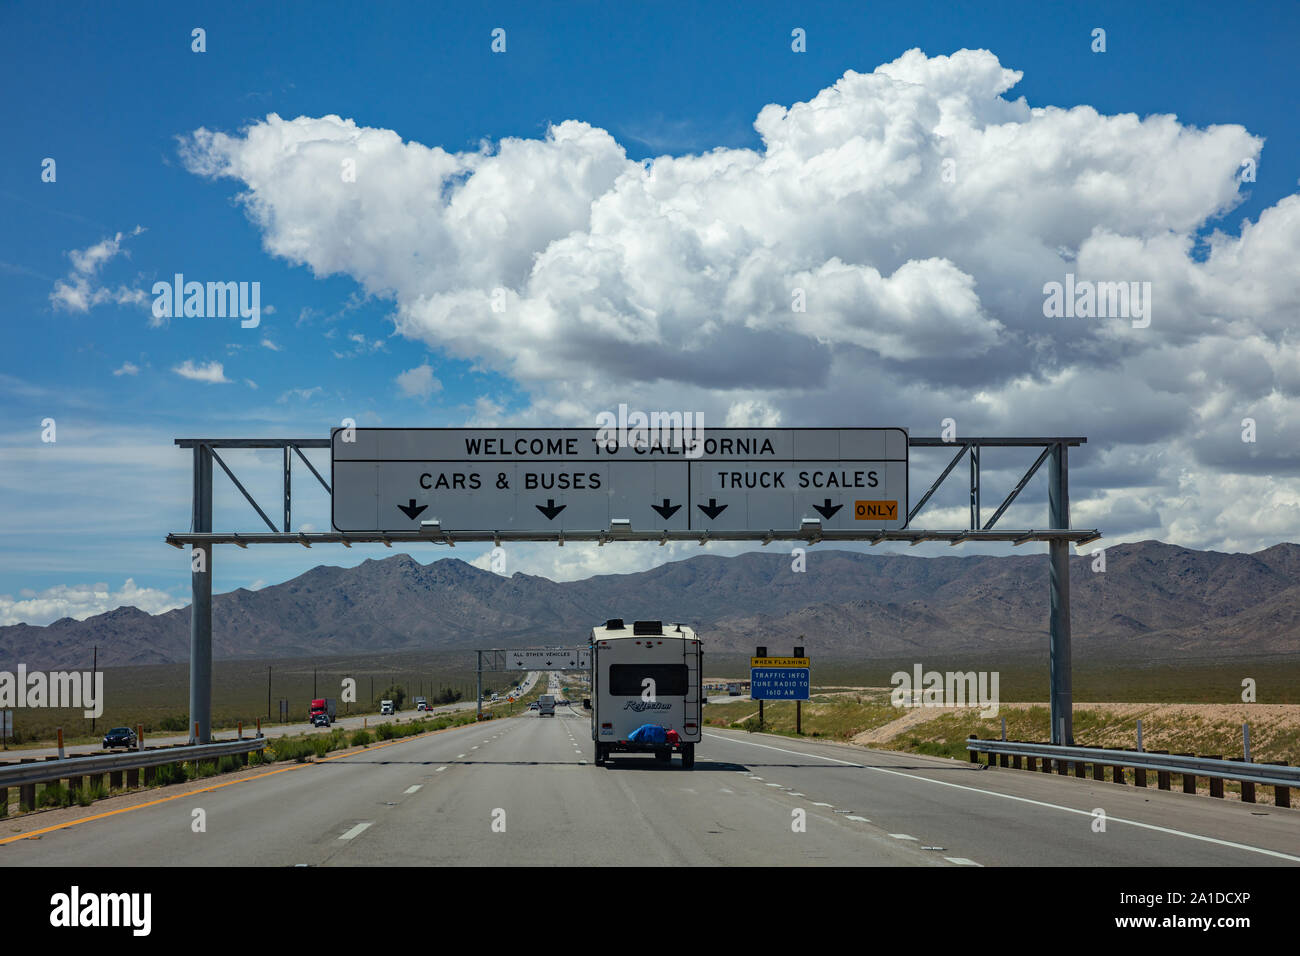 La route de la Californie, USA. 29 mai 2019 : Welcome to California road sign panneau sur l'autoroute, blue cloudy sky Banque D'Images